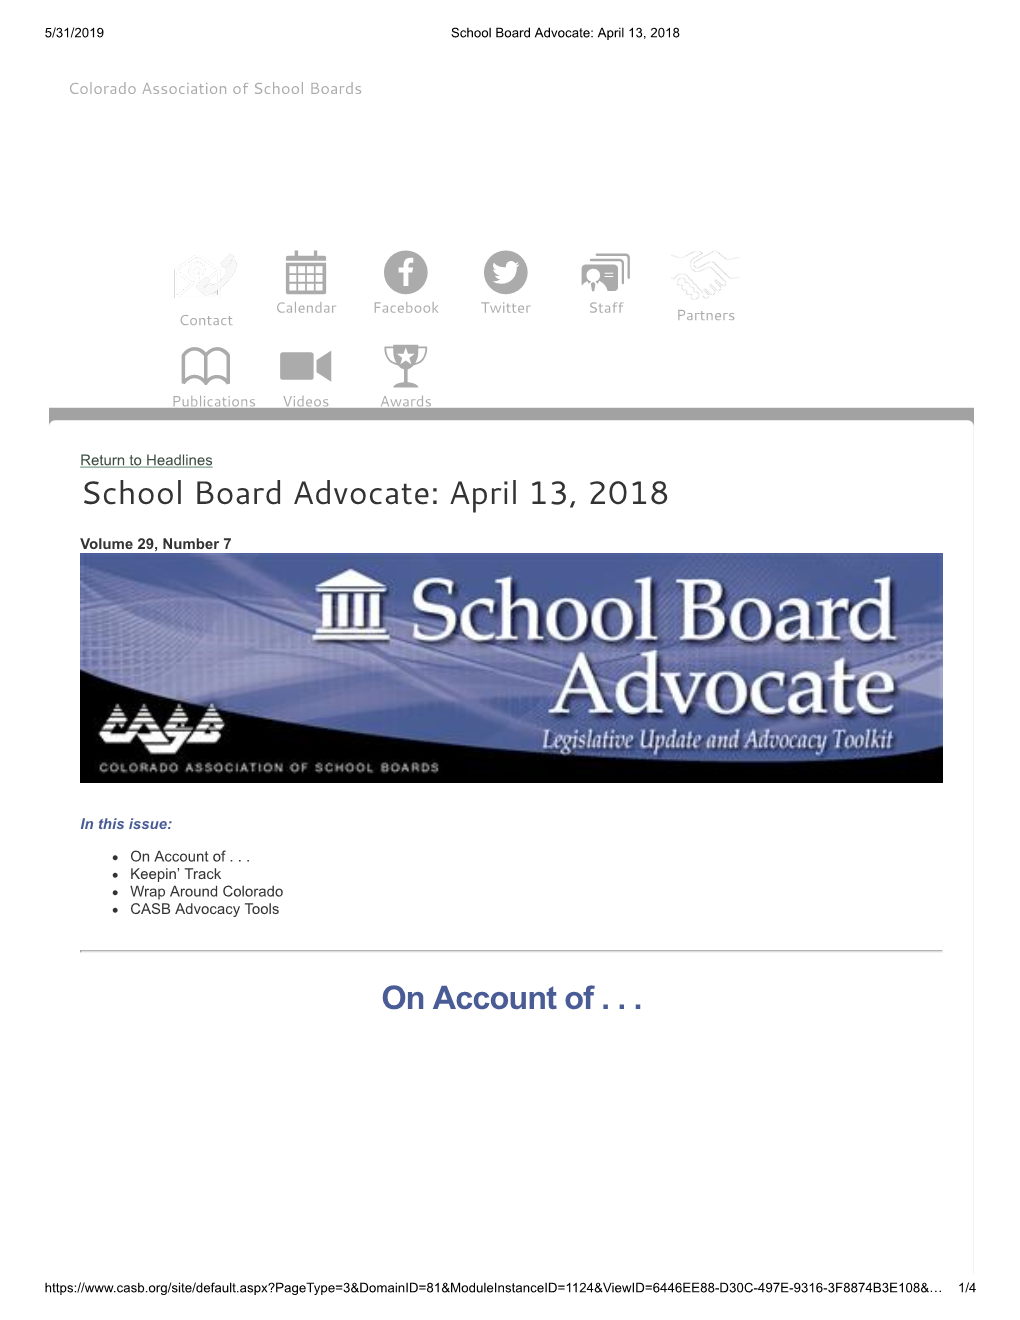 School Board Advocate: April 13, 2018